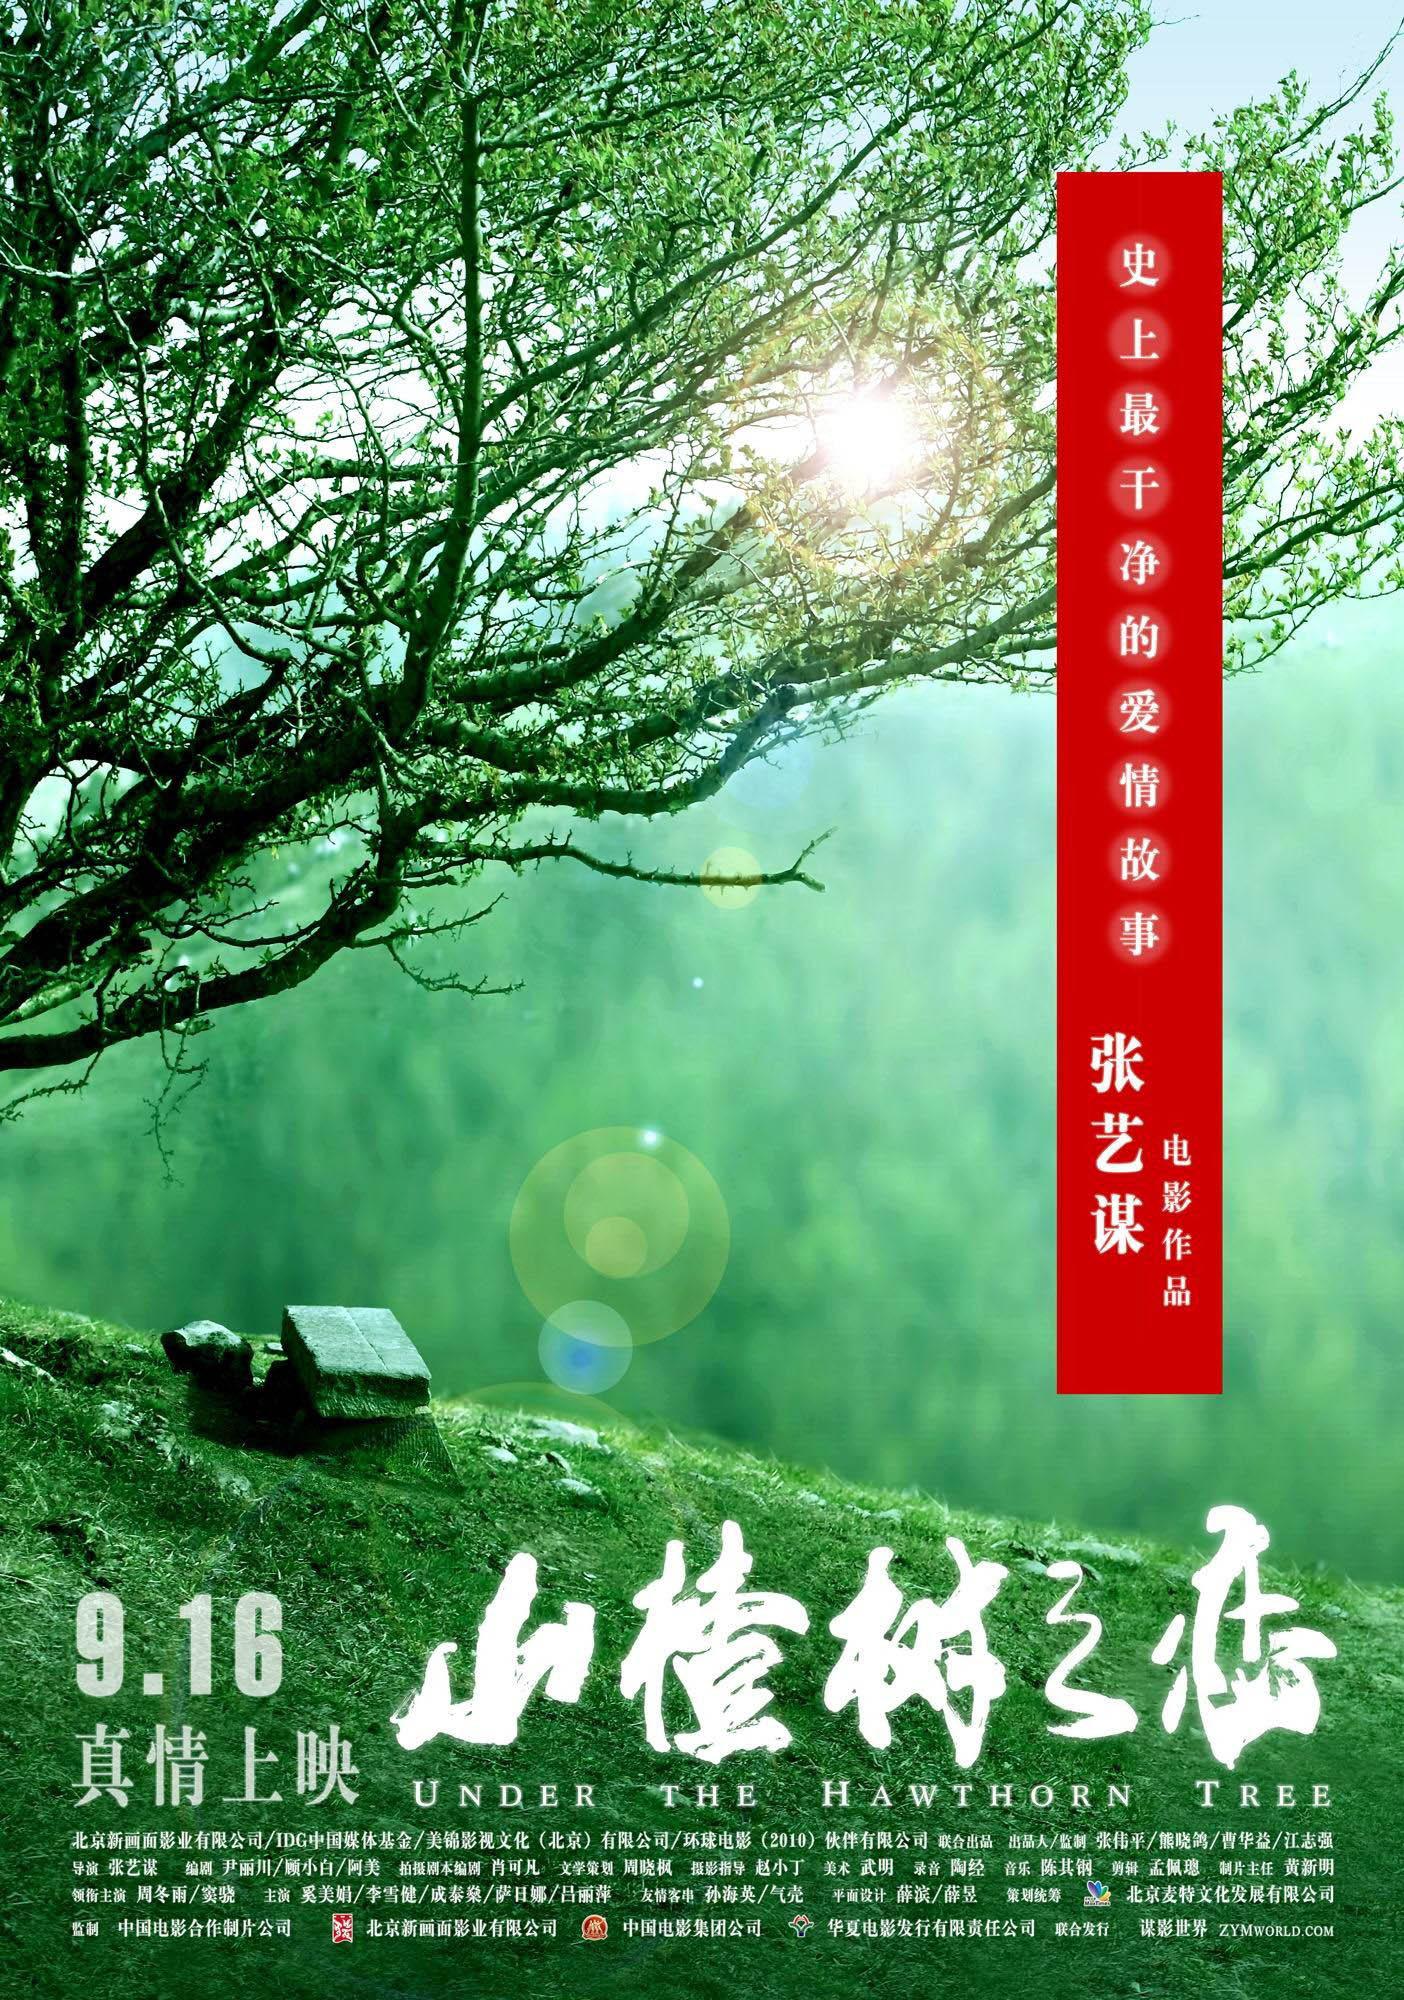 Постер фильма Под ветвями боярышника | Shan zha shu zhi lian